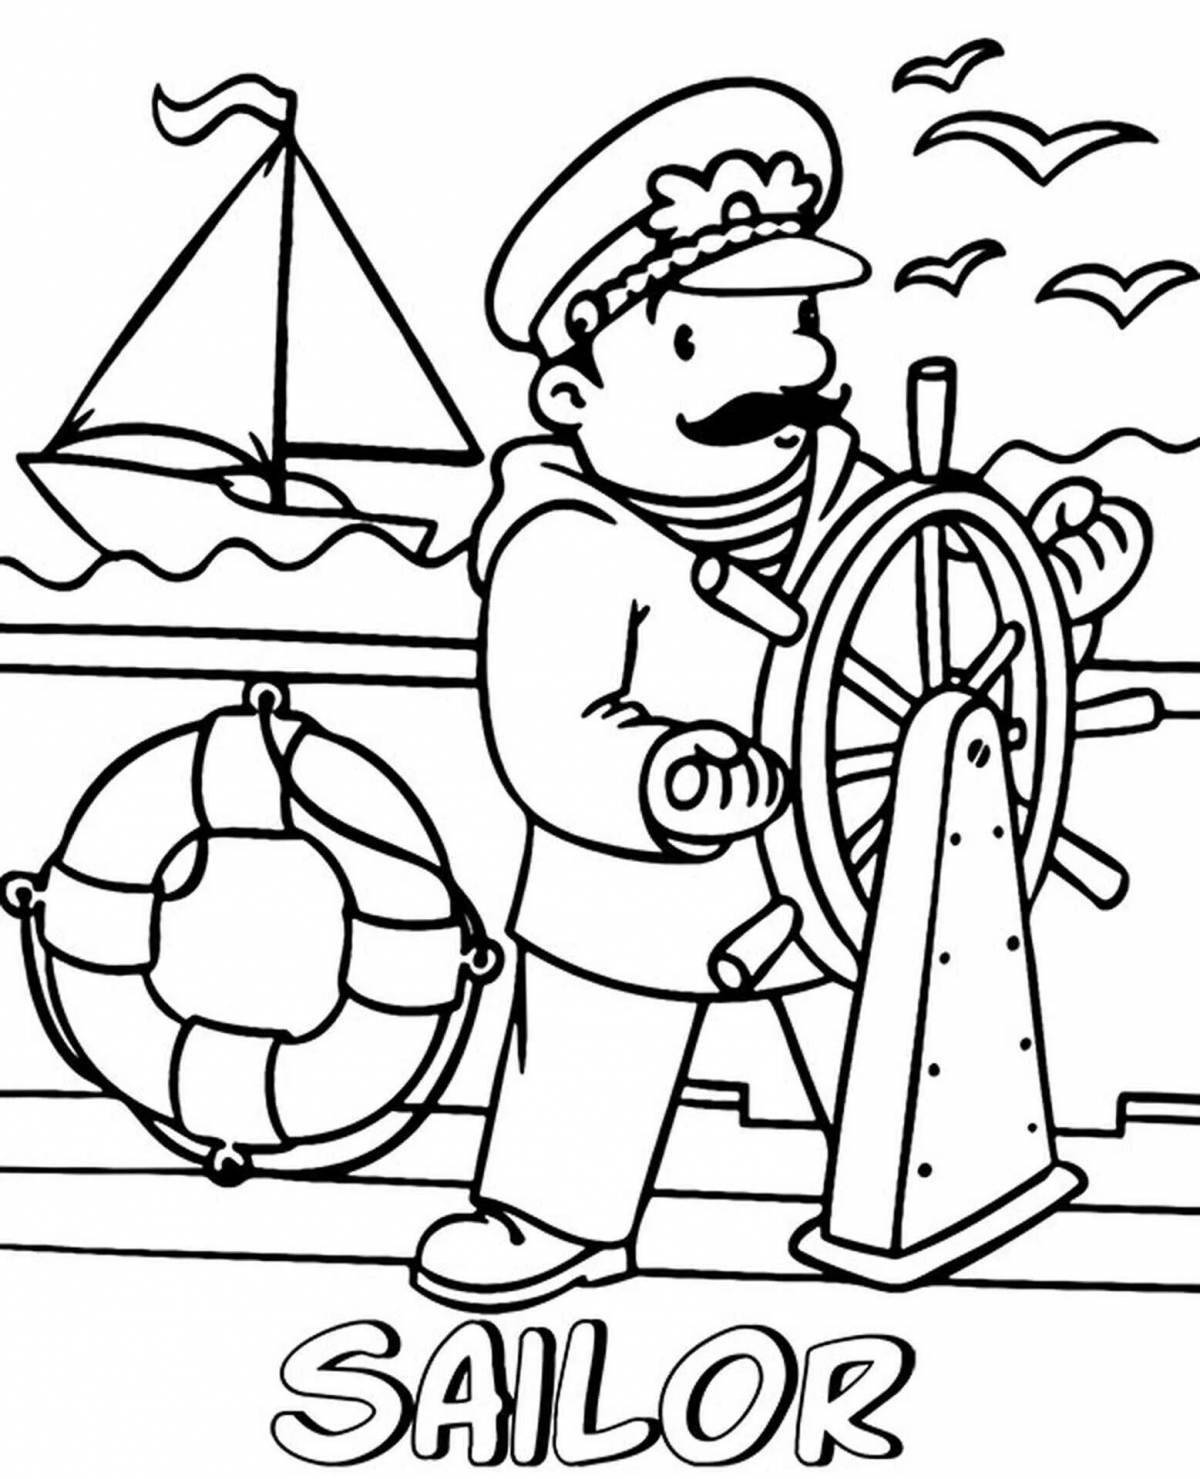 Colorful-sailor-image моряк раскраска для детей